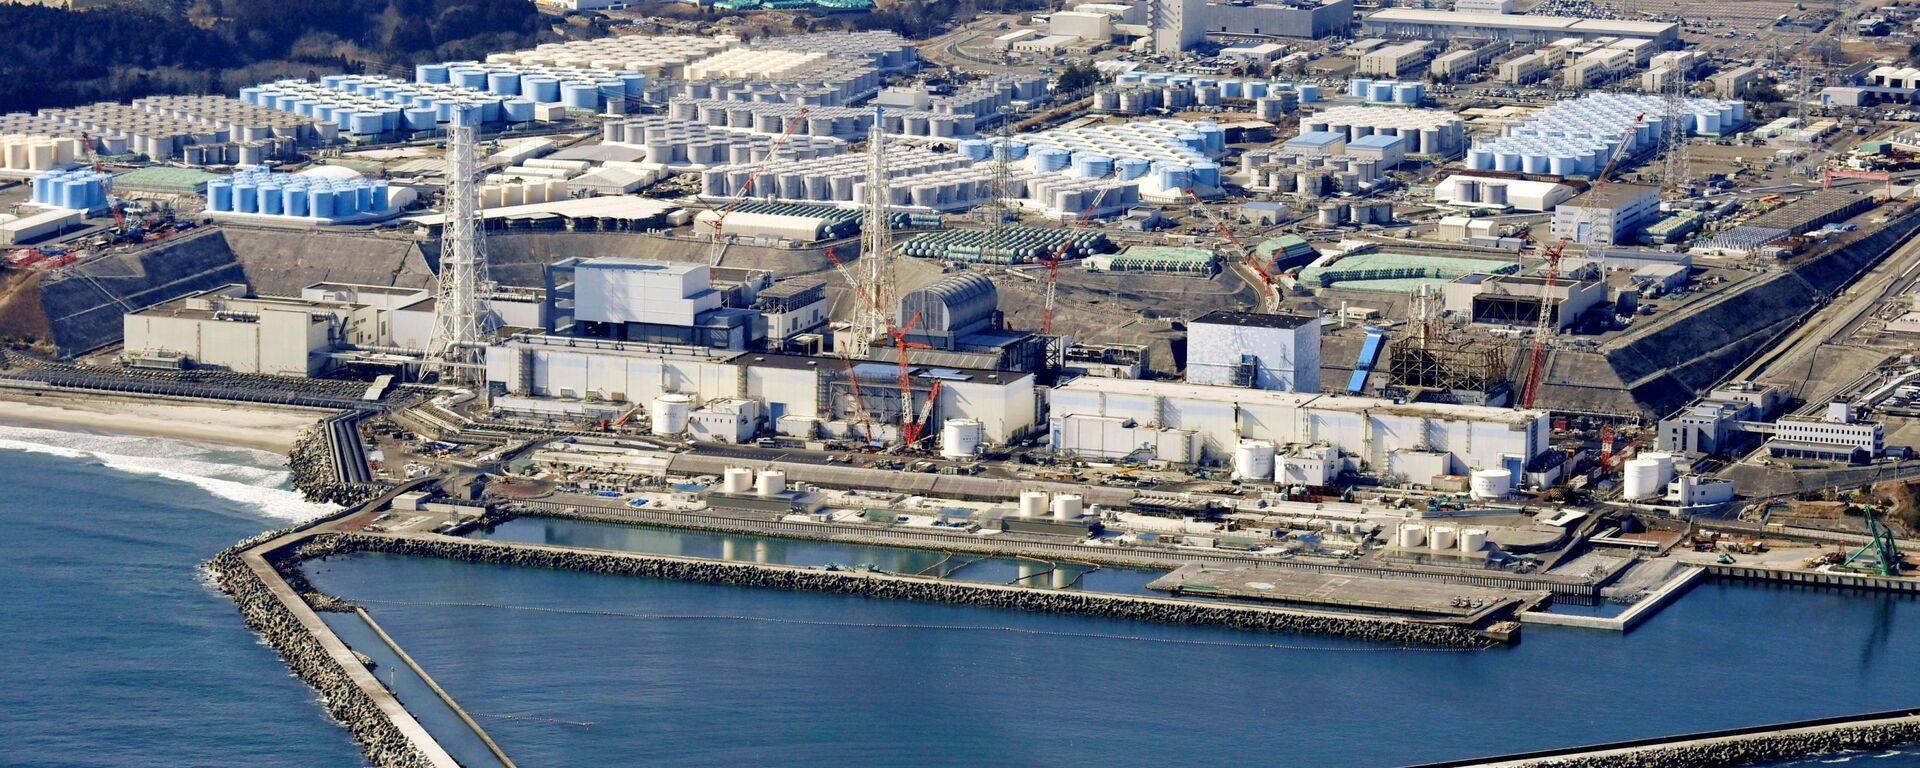 擔心污染 太平洋島國吁日本延后核污水排海